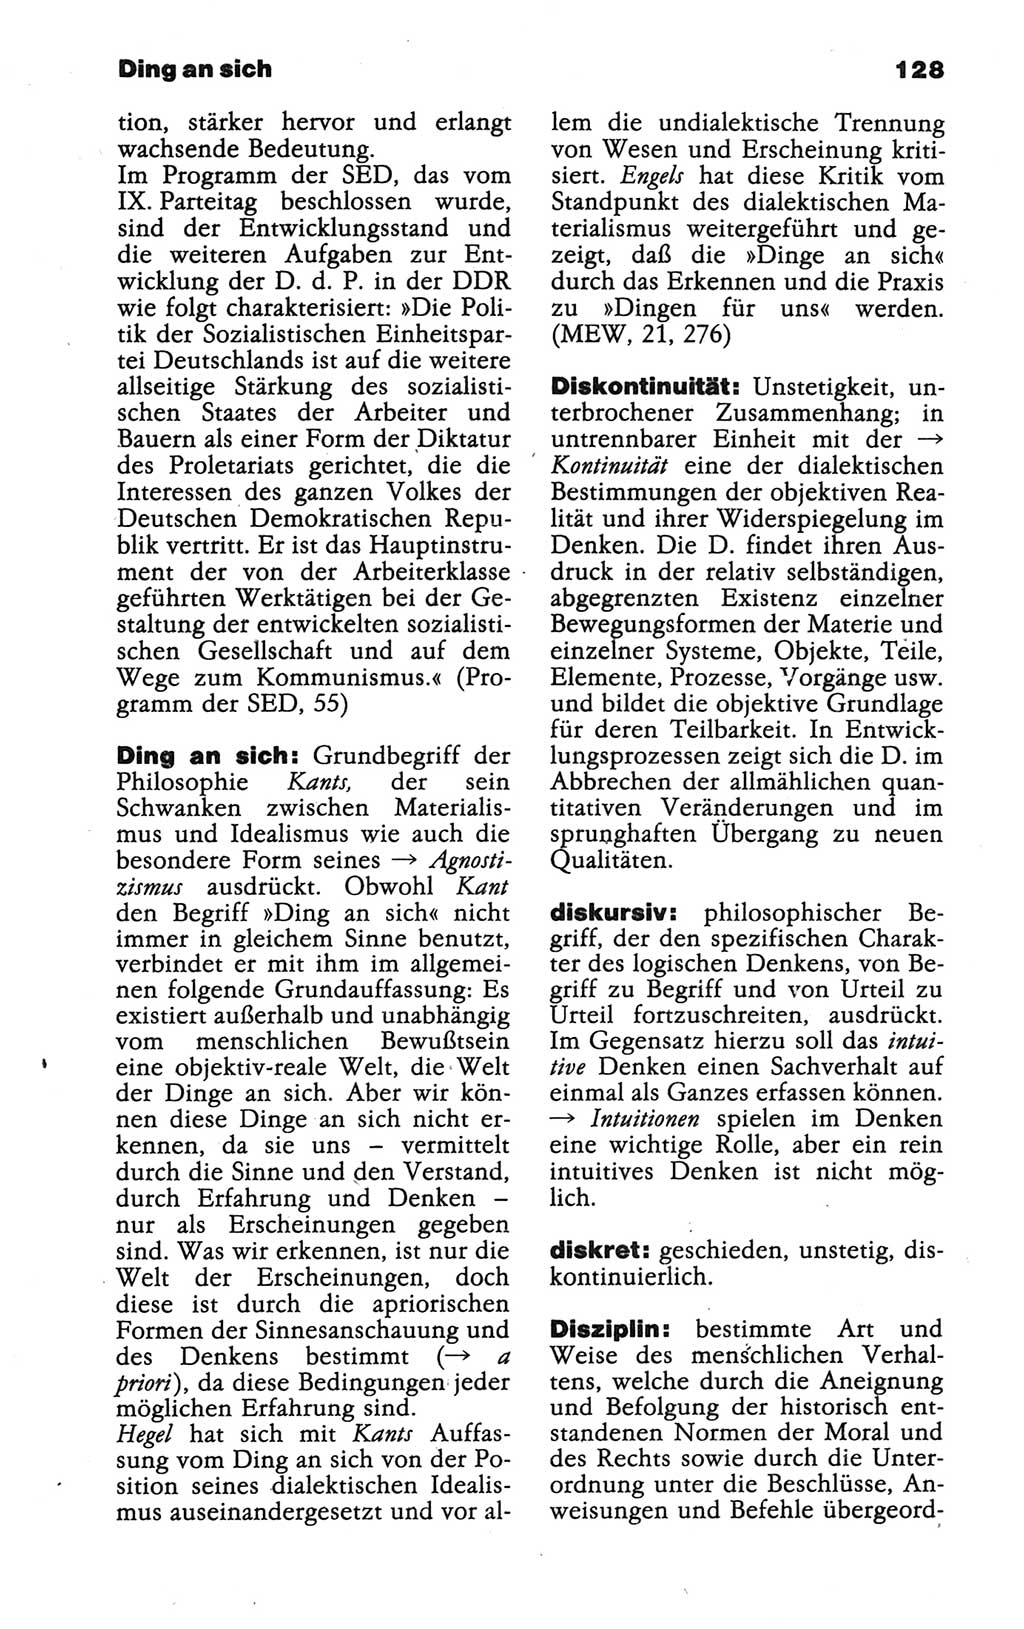 Wörterbuch der marxistisch-leninistischen Philosophie [Deutsche Demokratische Republik (DDR)] 1986, Seite 128 (Wb. ML Phil. DDR 1986, S. 128)